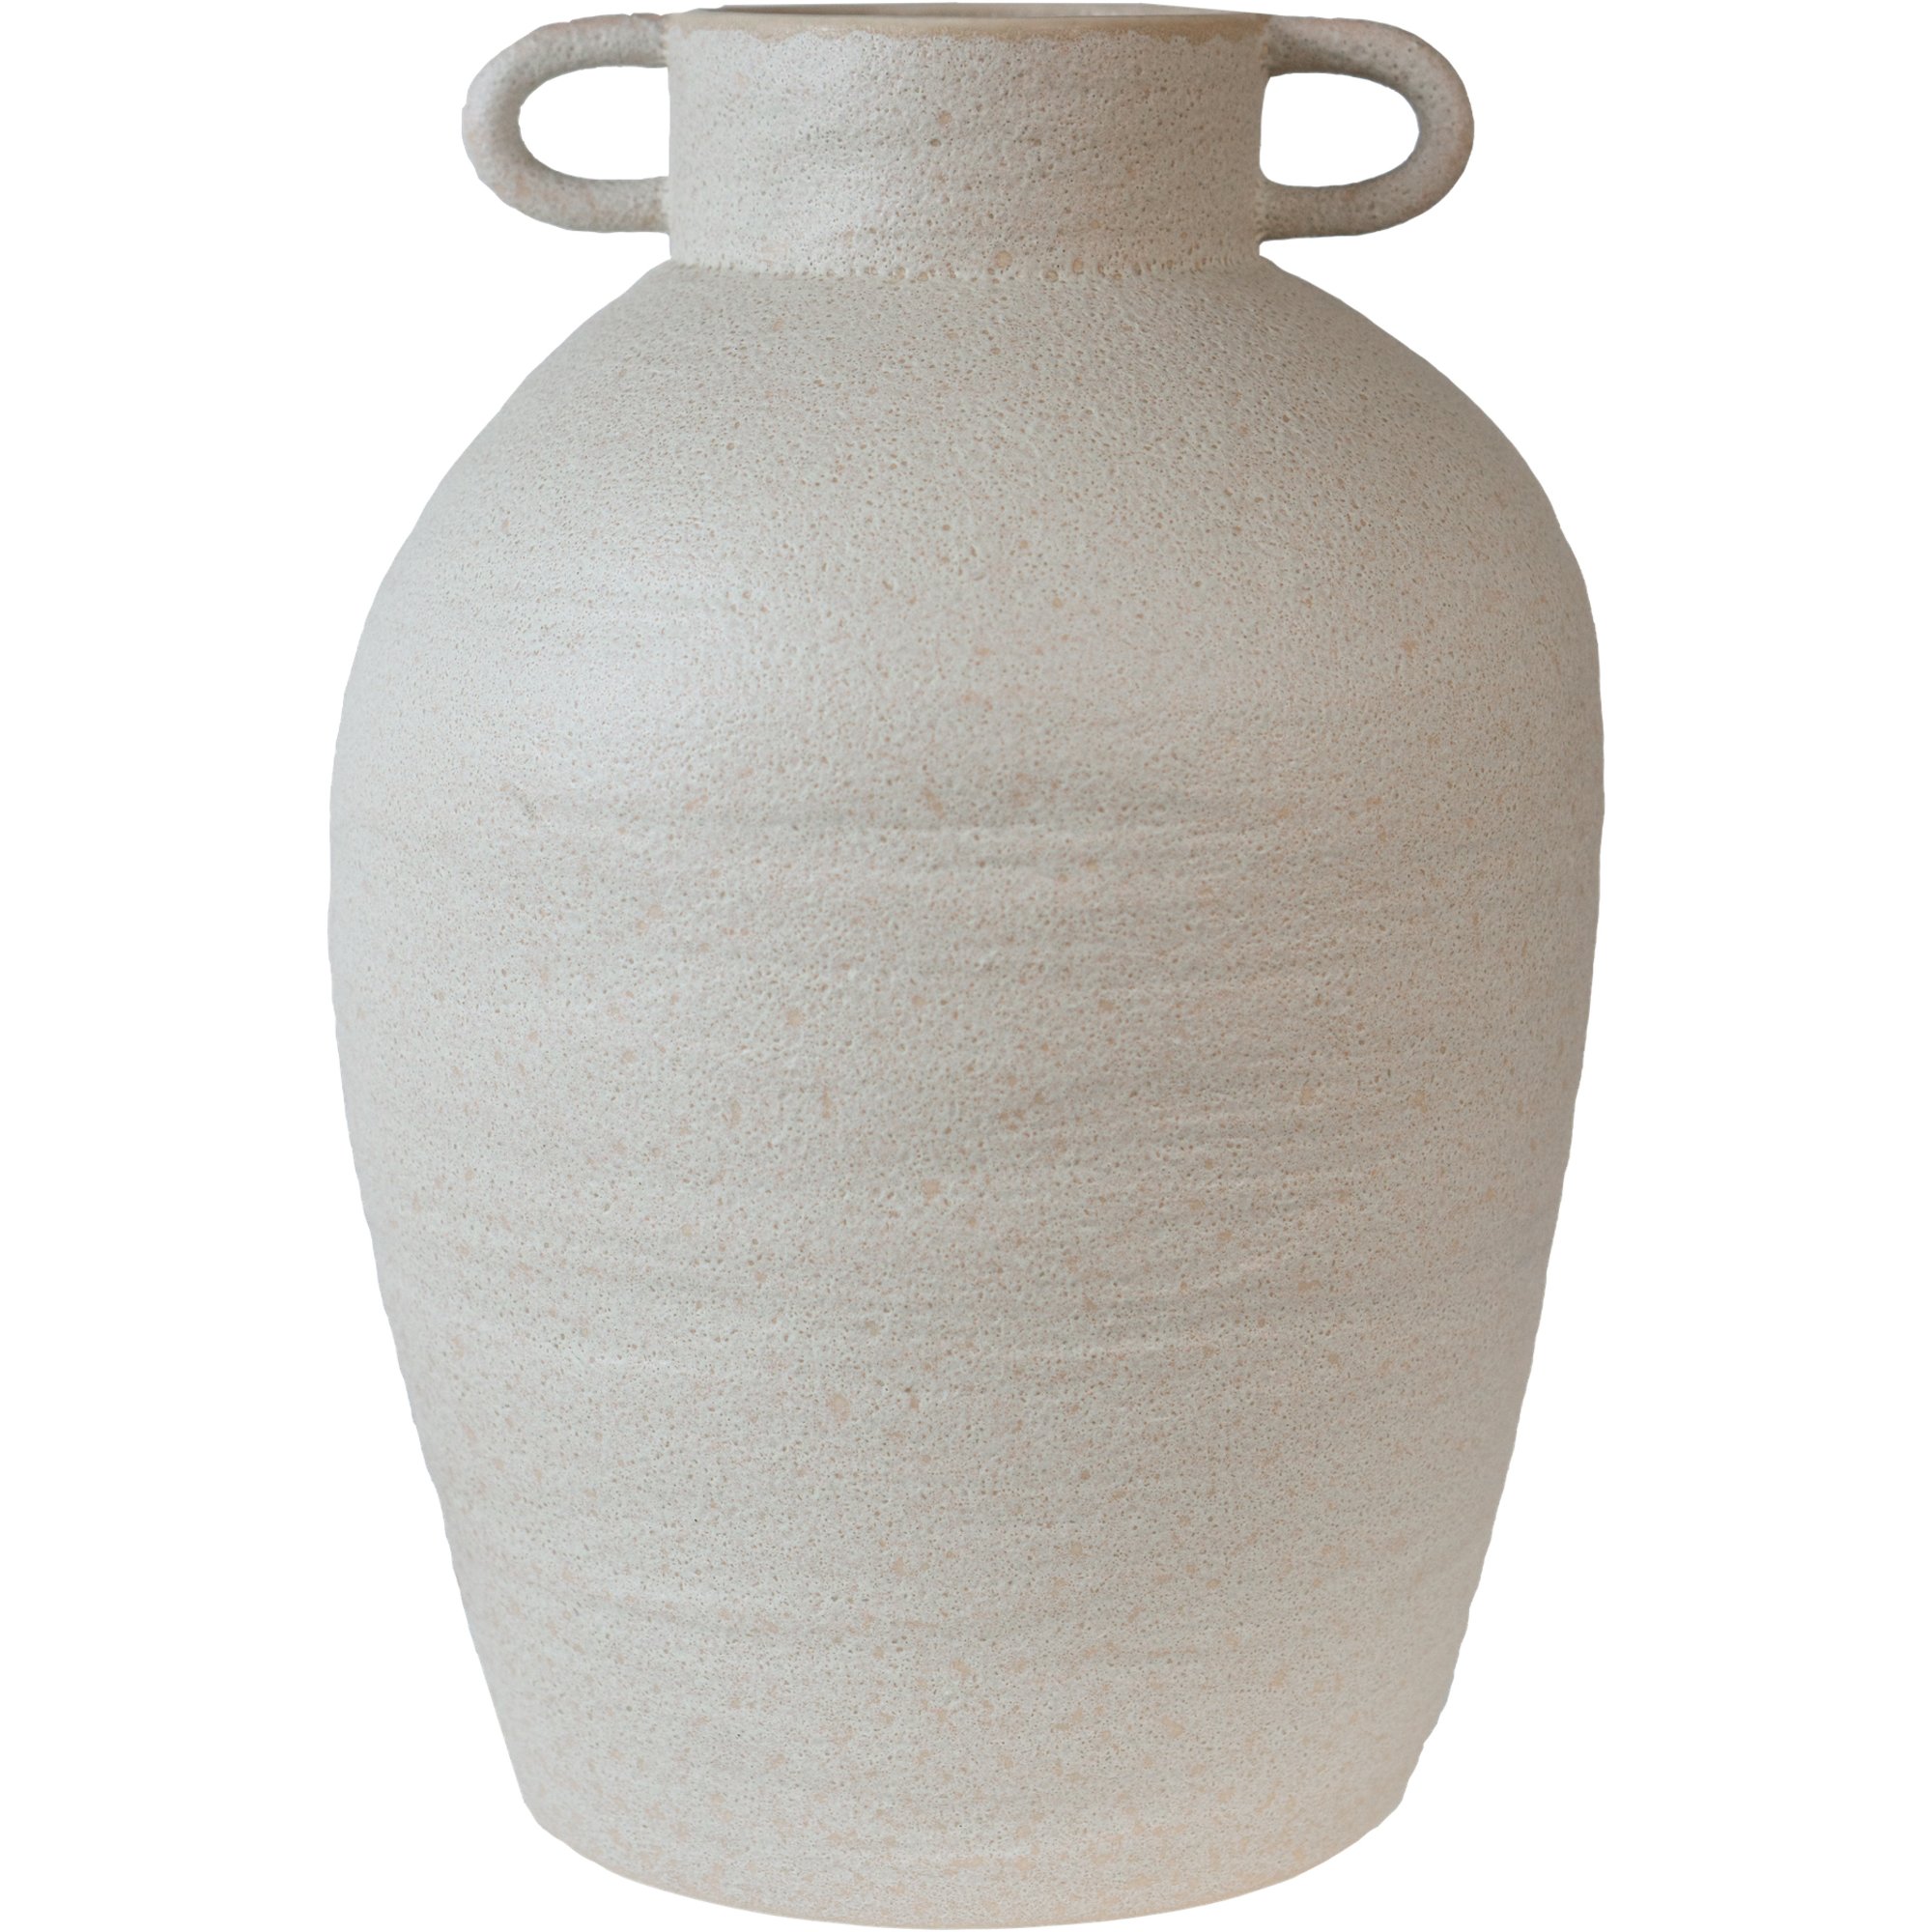 DBKD Long vas, large, mole